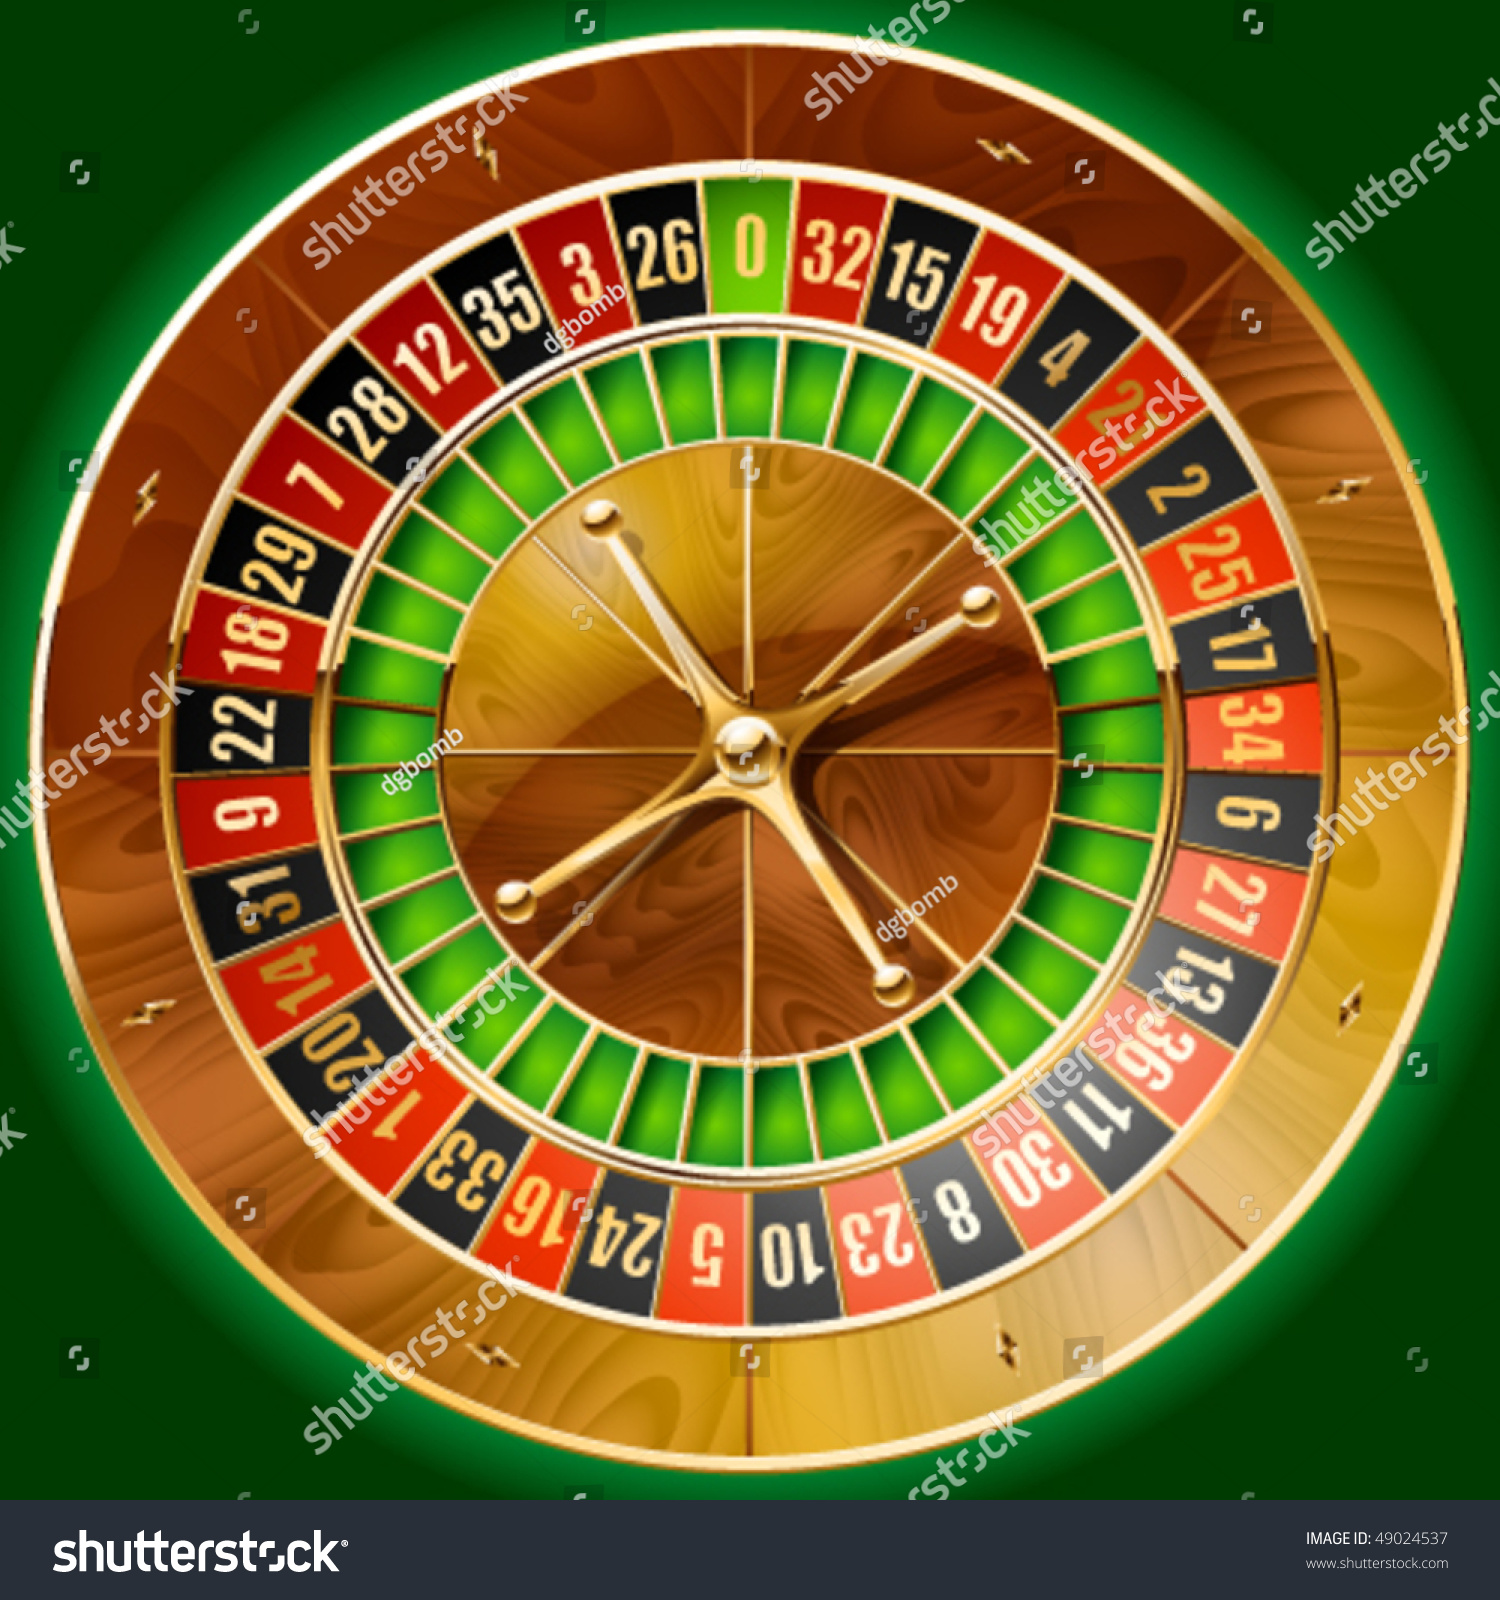 Vector Illustration Detailed Casino Roulette Wheel Stock Vector 49024537 - Shutterstock1500 x 1600